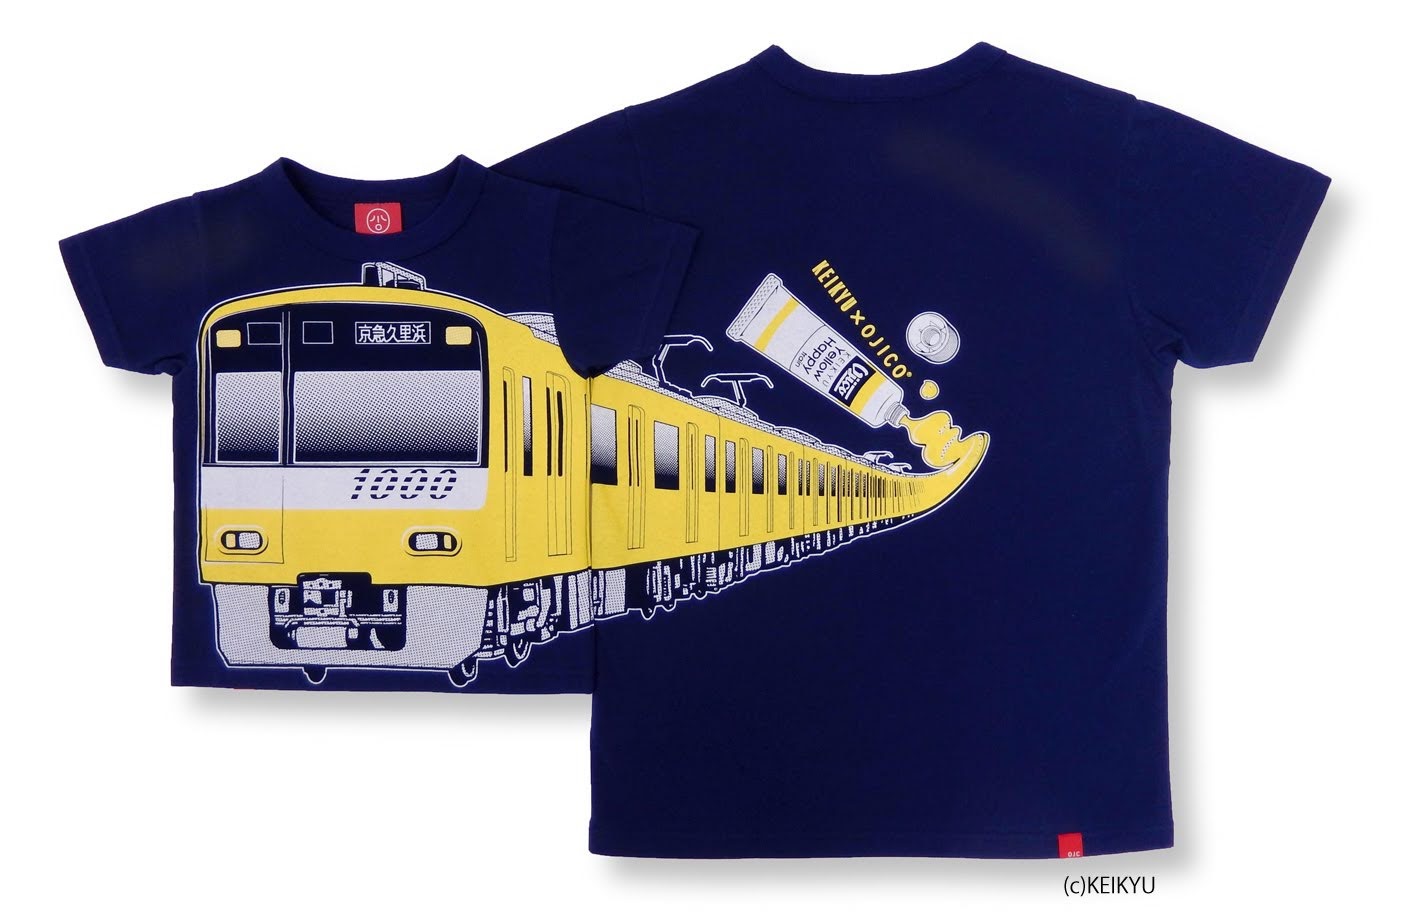 京急電鉄 Ojico Keikyu Yellow Happy Train デザインが登場 Newscast